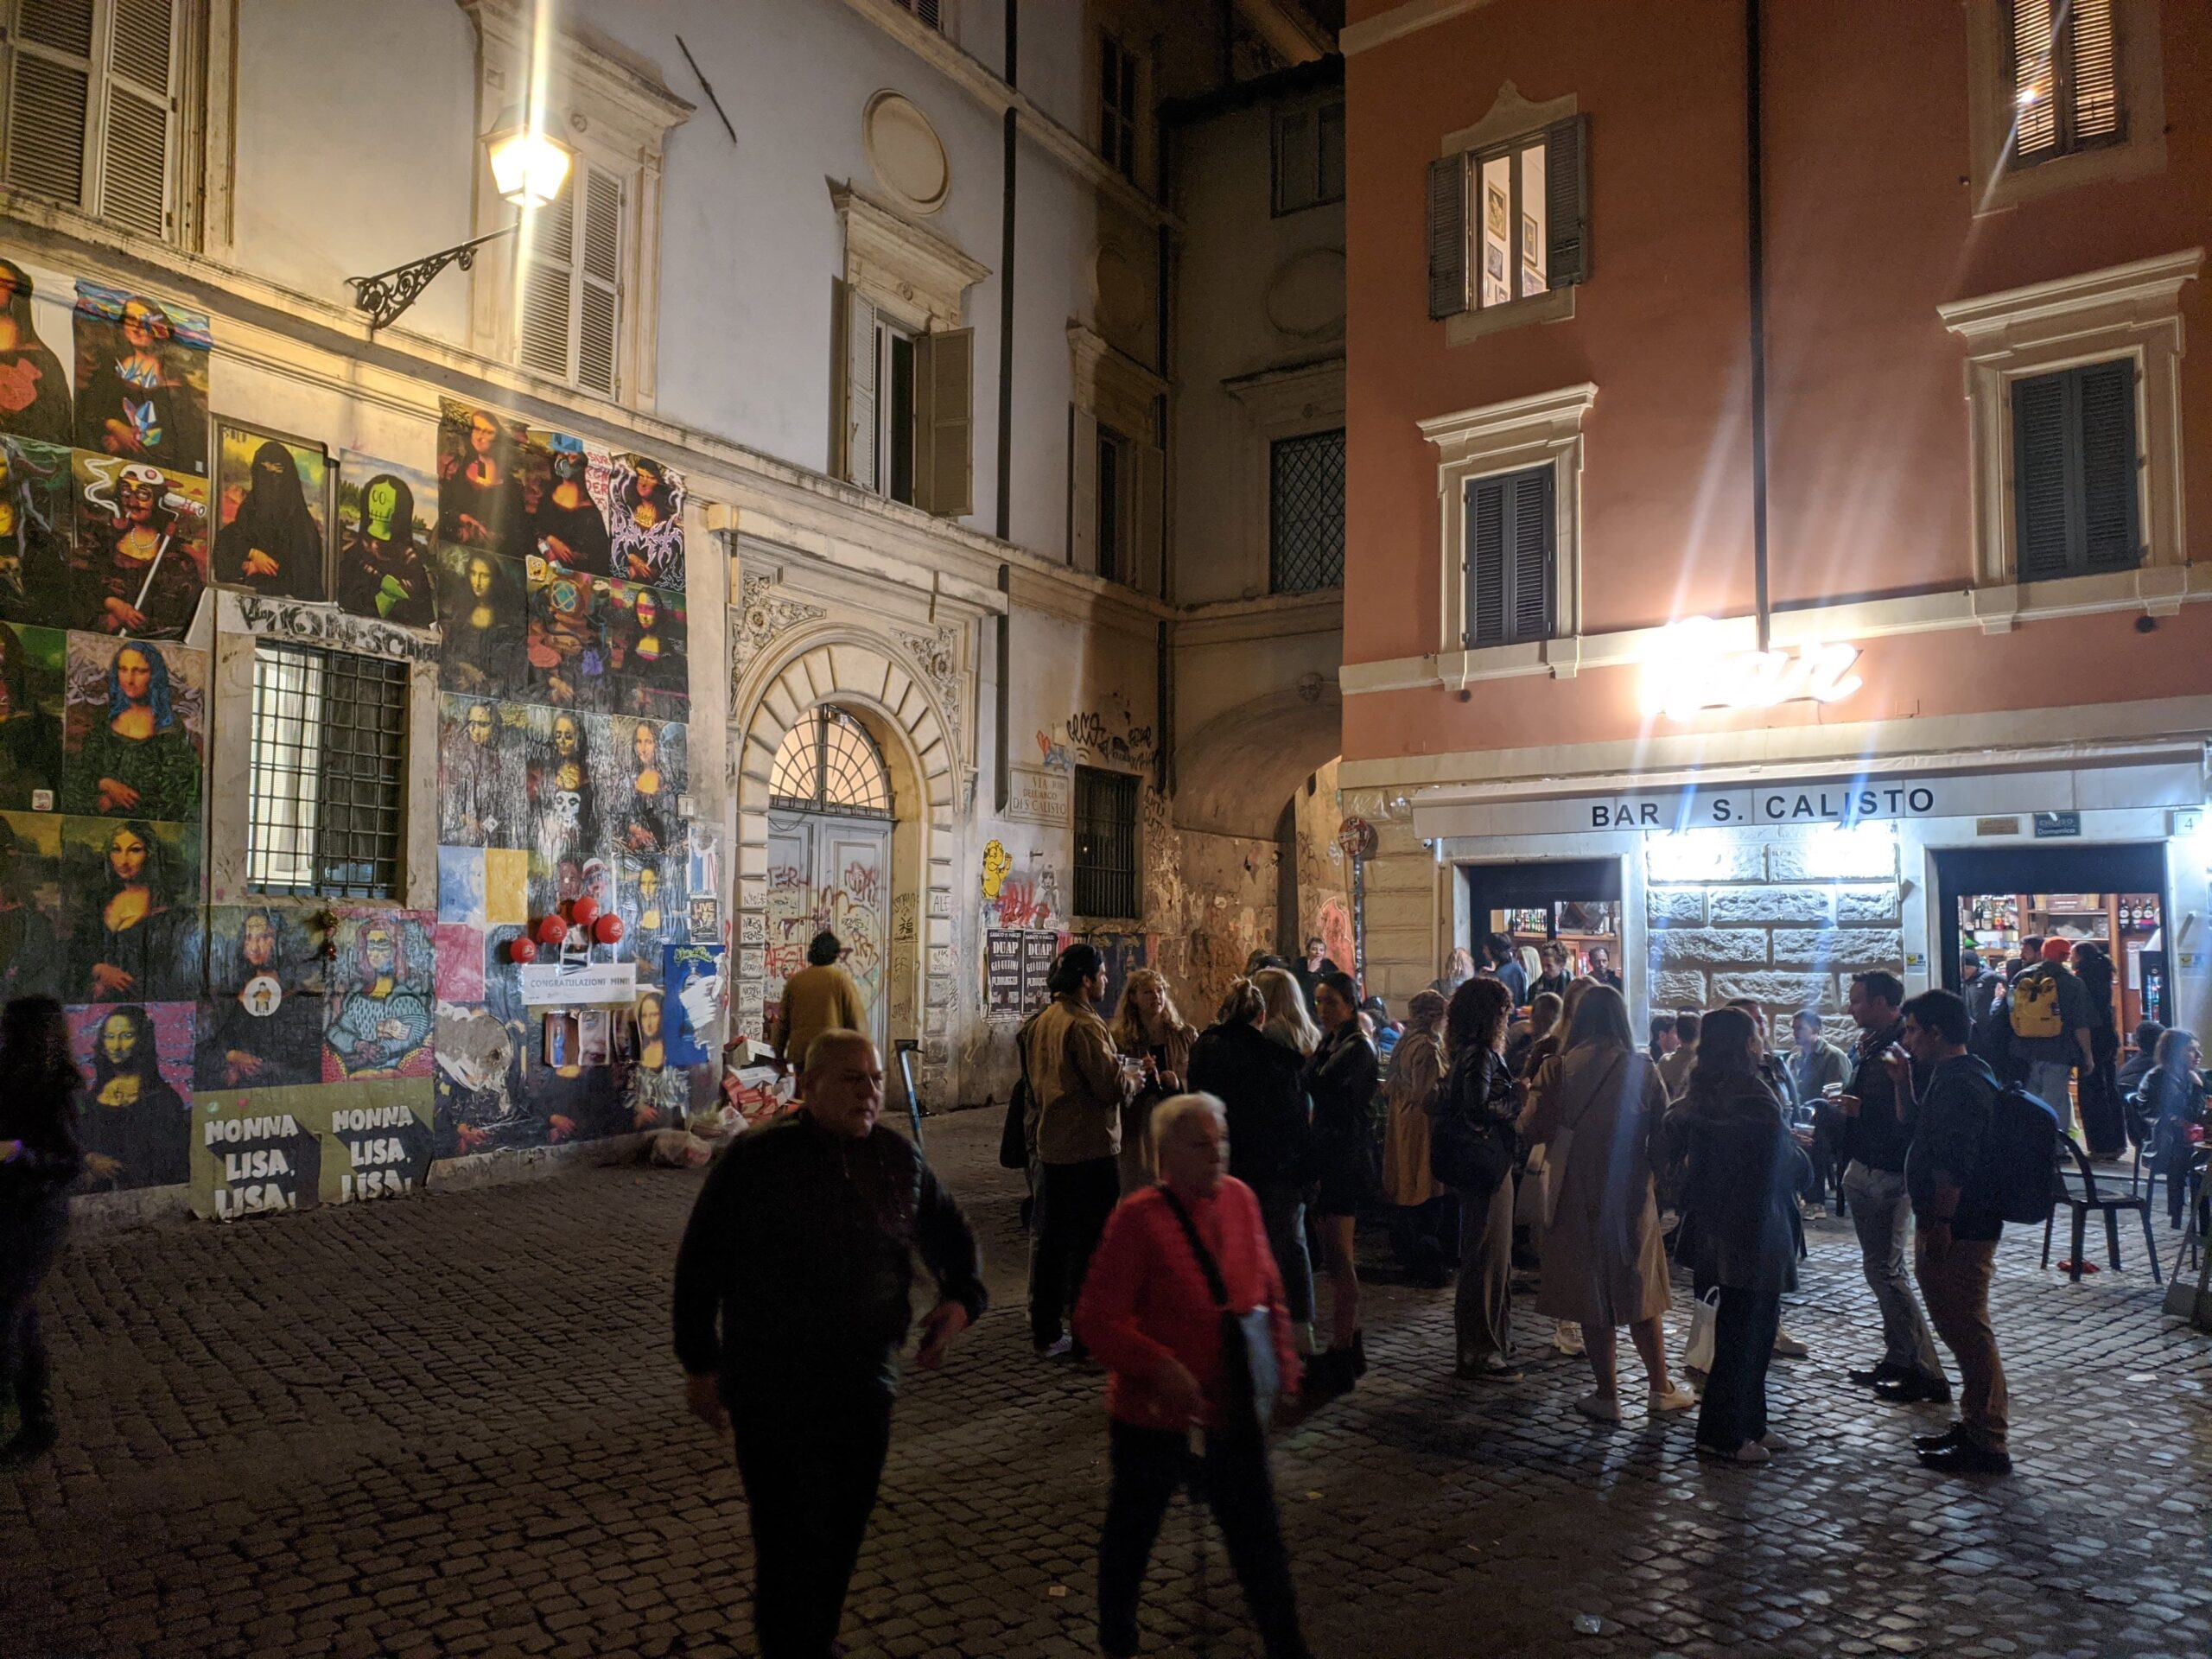 : Fachada colorida e vibrante de um bar, adornada com várias interpretações de arte de rua da Mona Lisa, com pessoas reunidas e conversando na calçada em uma noite animada.